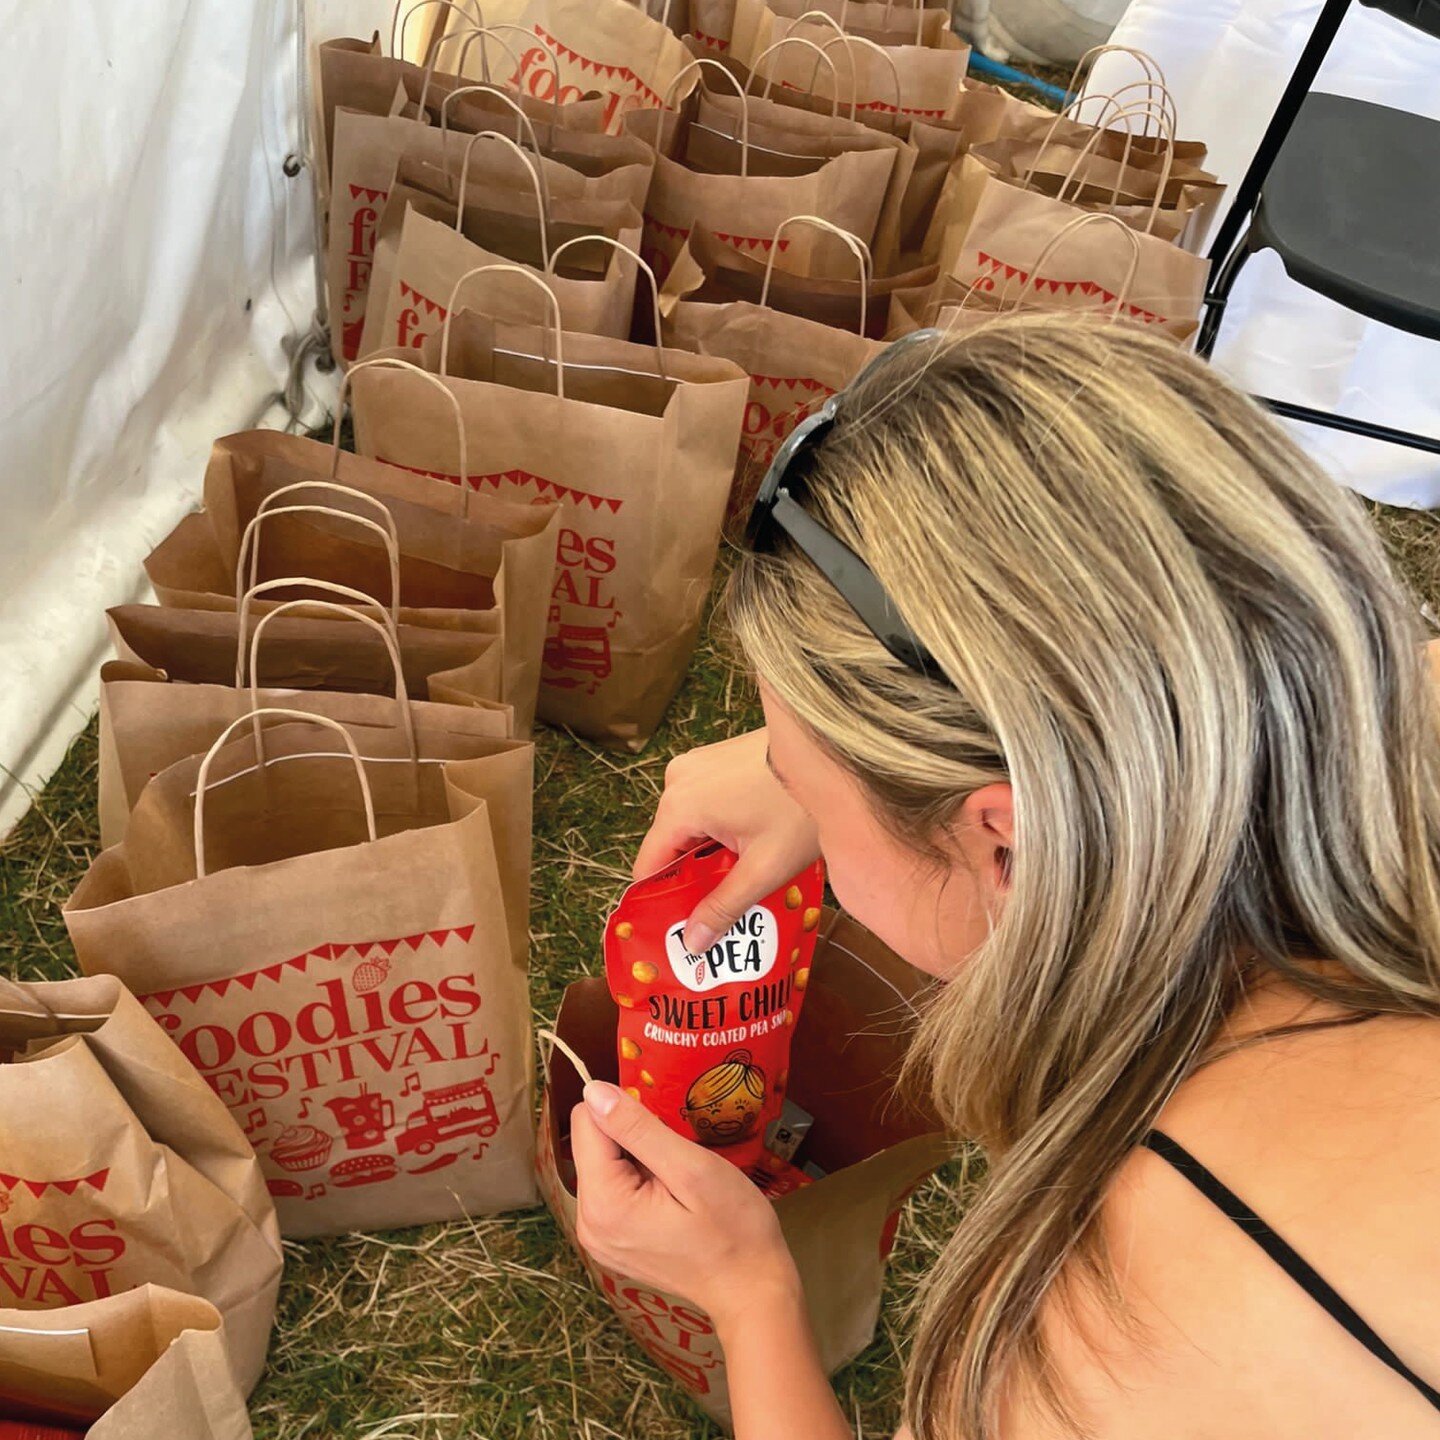 Sneaky peek at the goodie bags for @foodiesfestival! 
-
-
-
-
 #takingthepea #healthfood #foodinsp #vegan #vegetarianrecipes #friendsnotfood #recipeideas #foodie #foodstagram #driedpeas #healthyeating #vegansnacks #plantbased #vegancommunity #feedfee